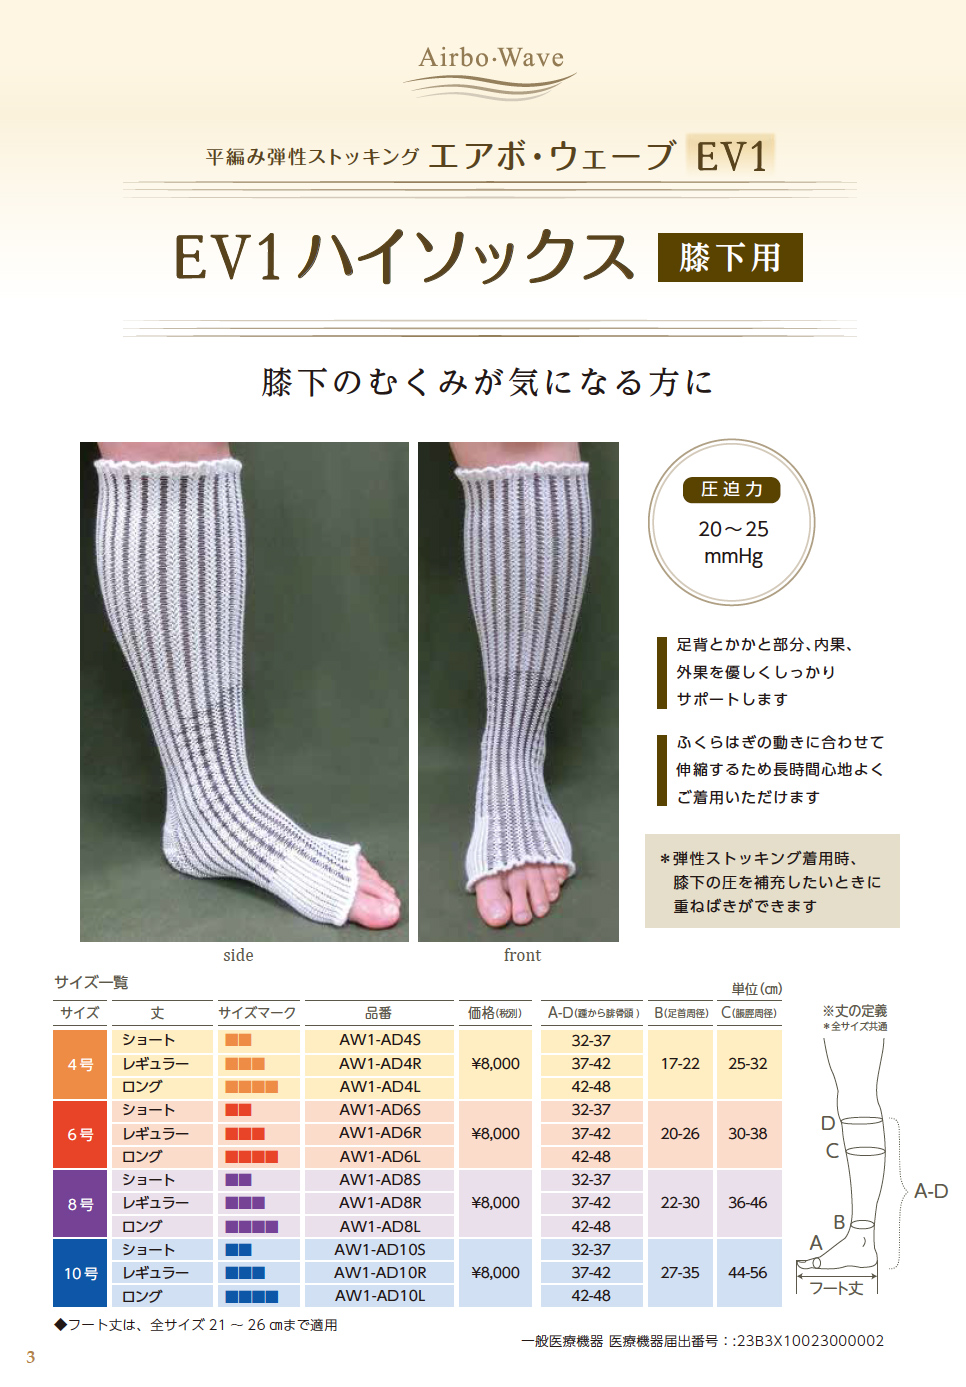 平編み弾性ストッキング「エアボ・ウェーブEV1」（膝下用・脚用・大腿 